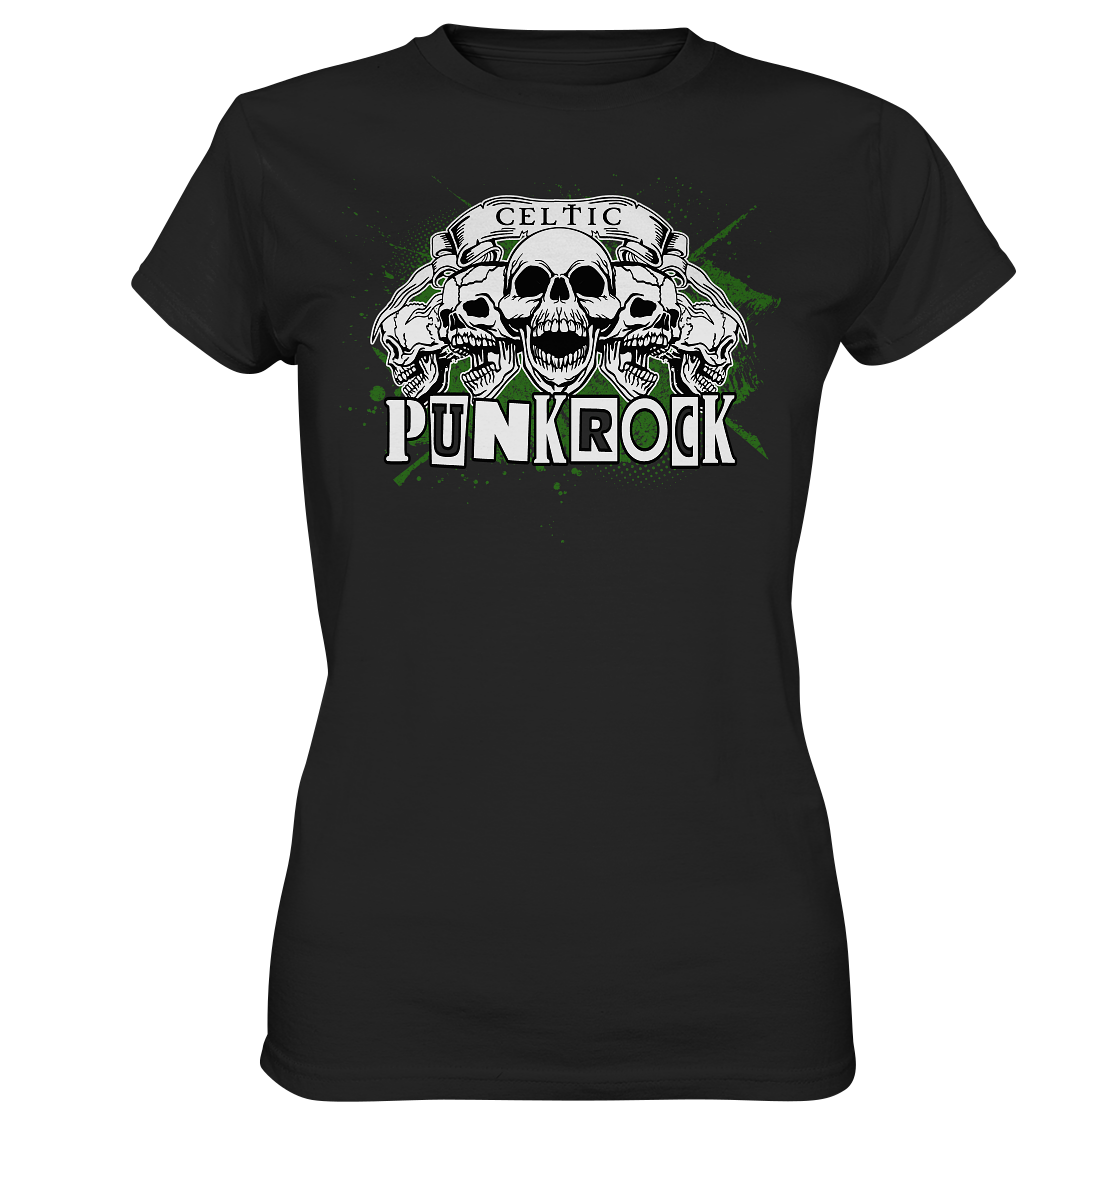 Celtic "Punkrock" - Ladies Premium Shirt